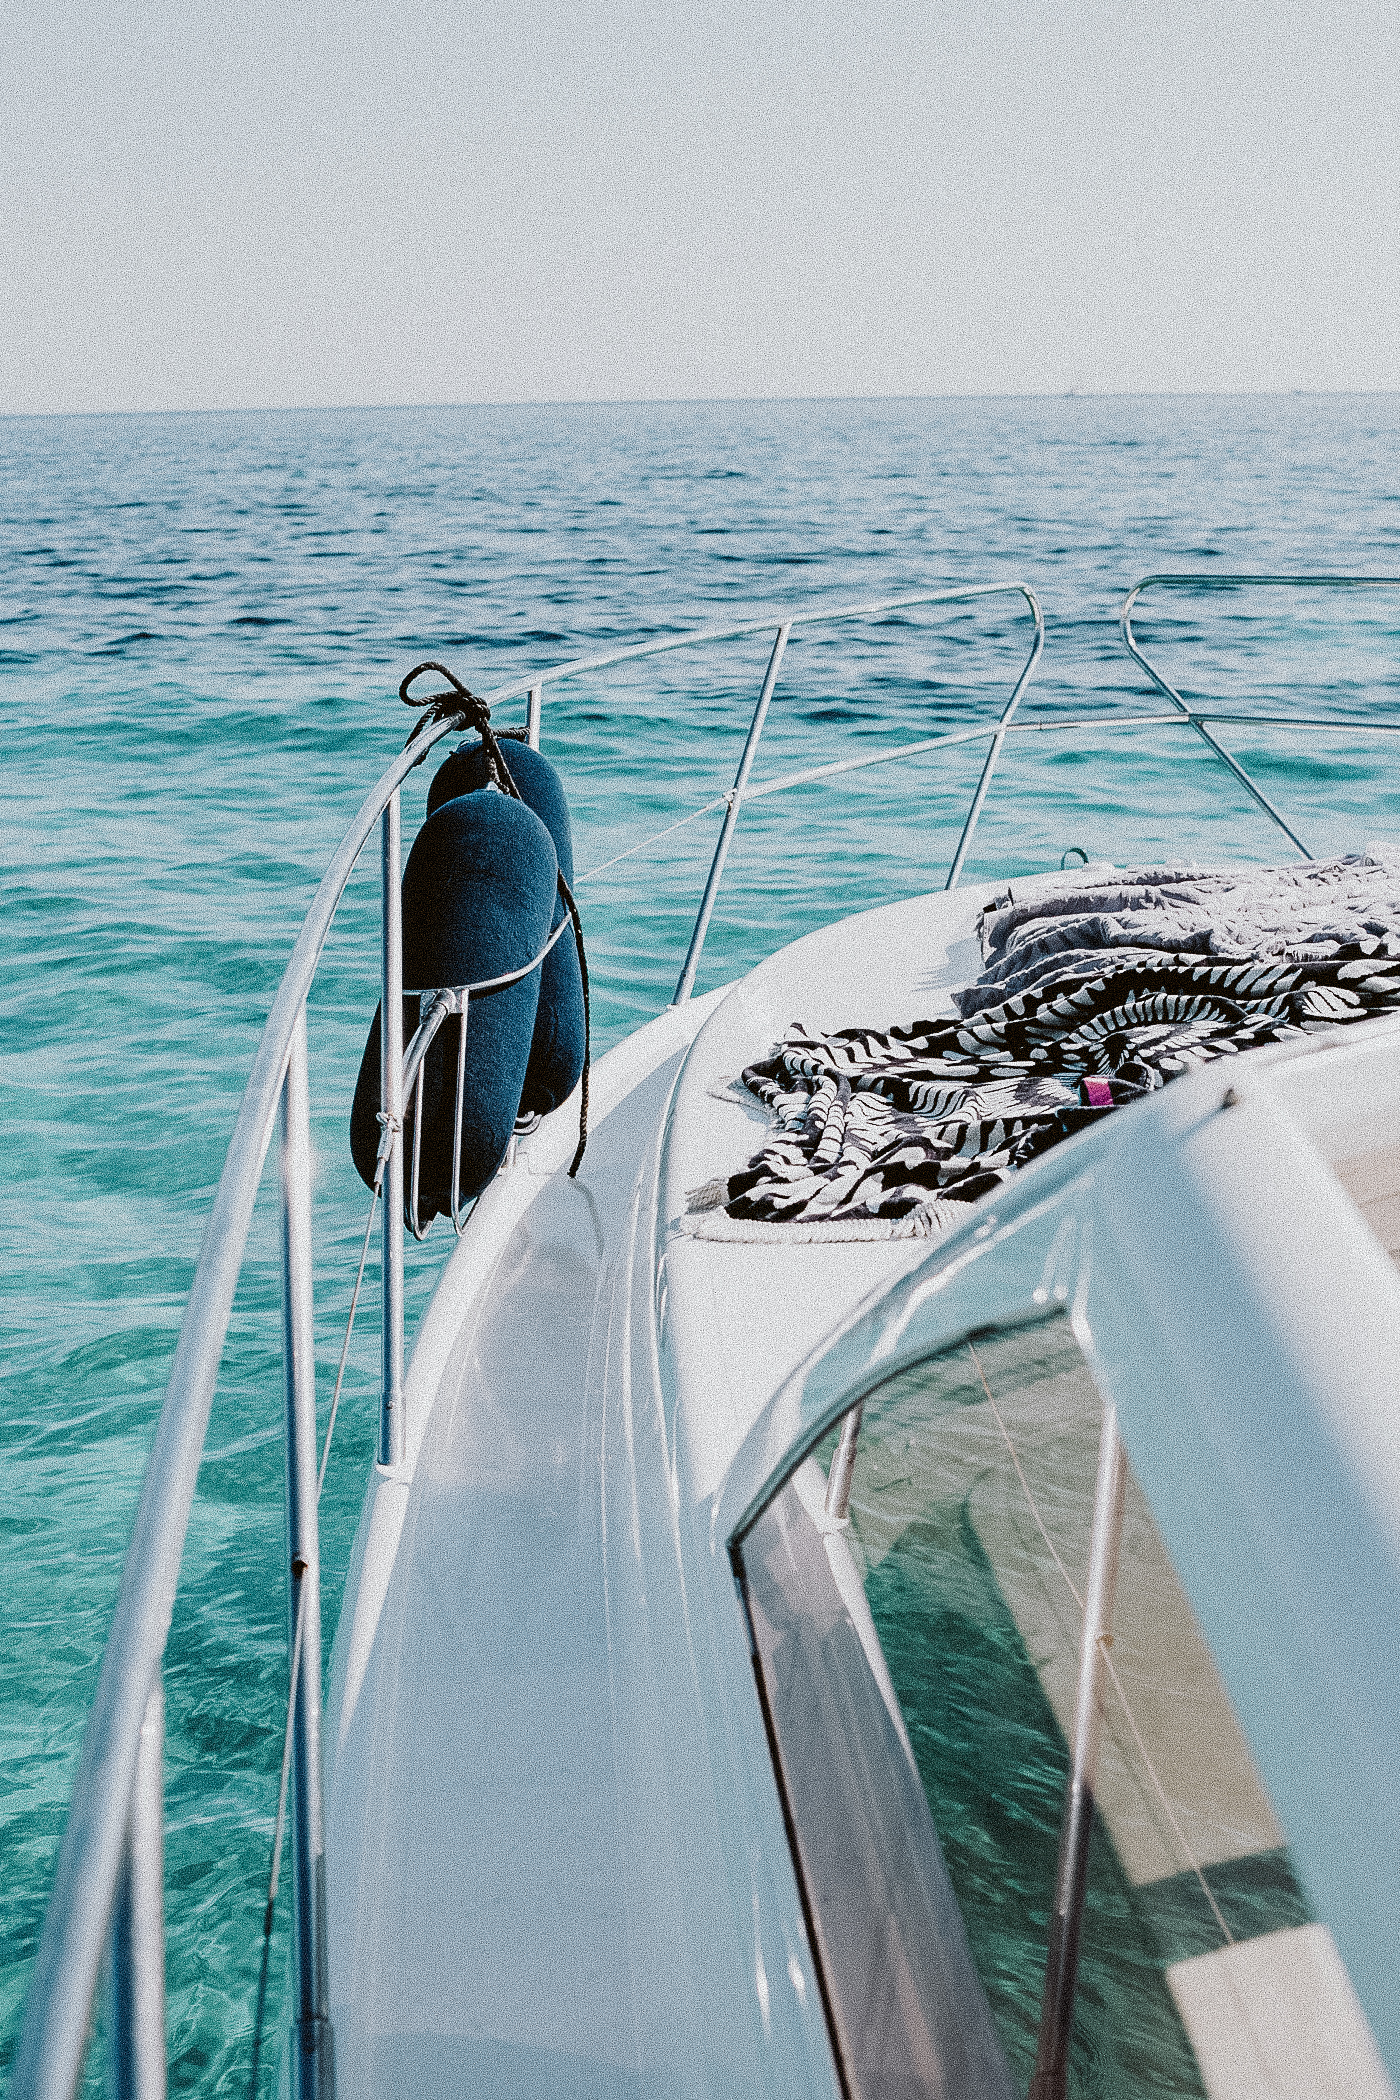 Cotton Boats, Ibiza Boat Rental | Bikinis & Passports